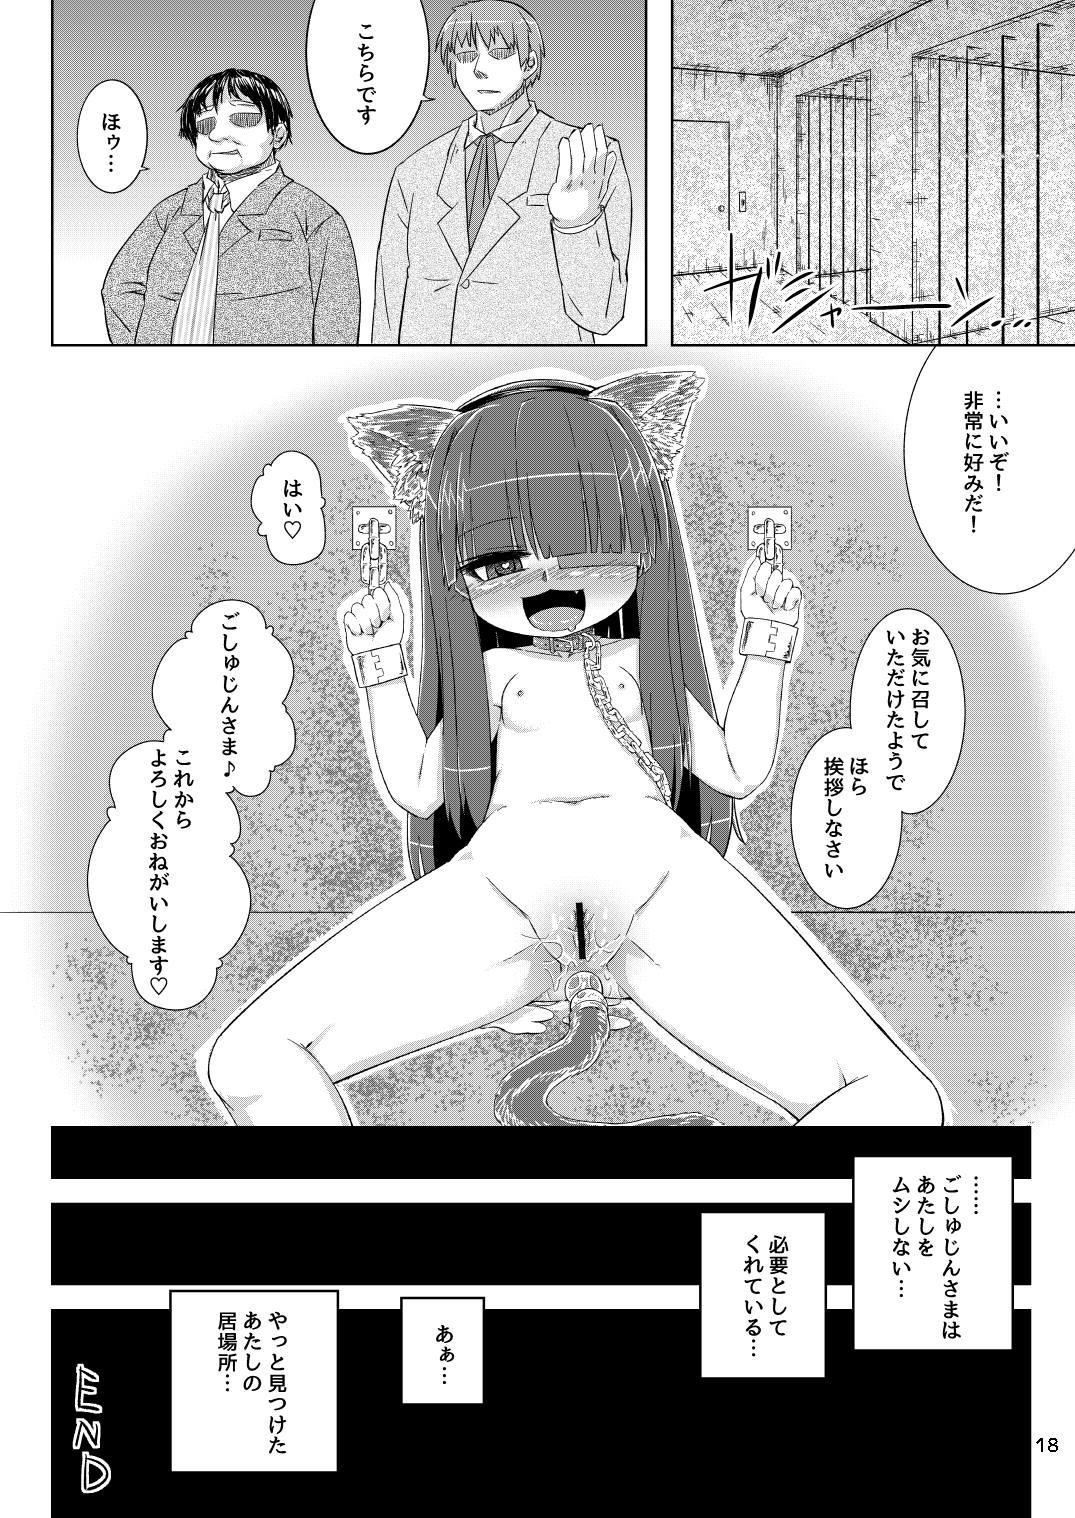 Mas Mirai-chan wa Biyaku nanka ni Makenain dakara! - Senran kagura Gonzo - Page 19